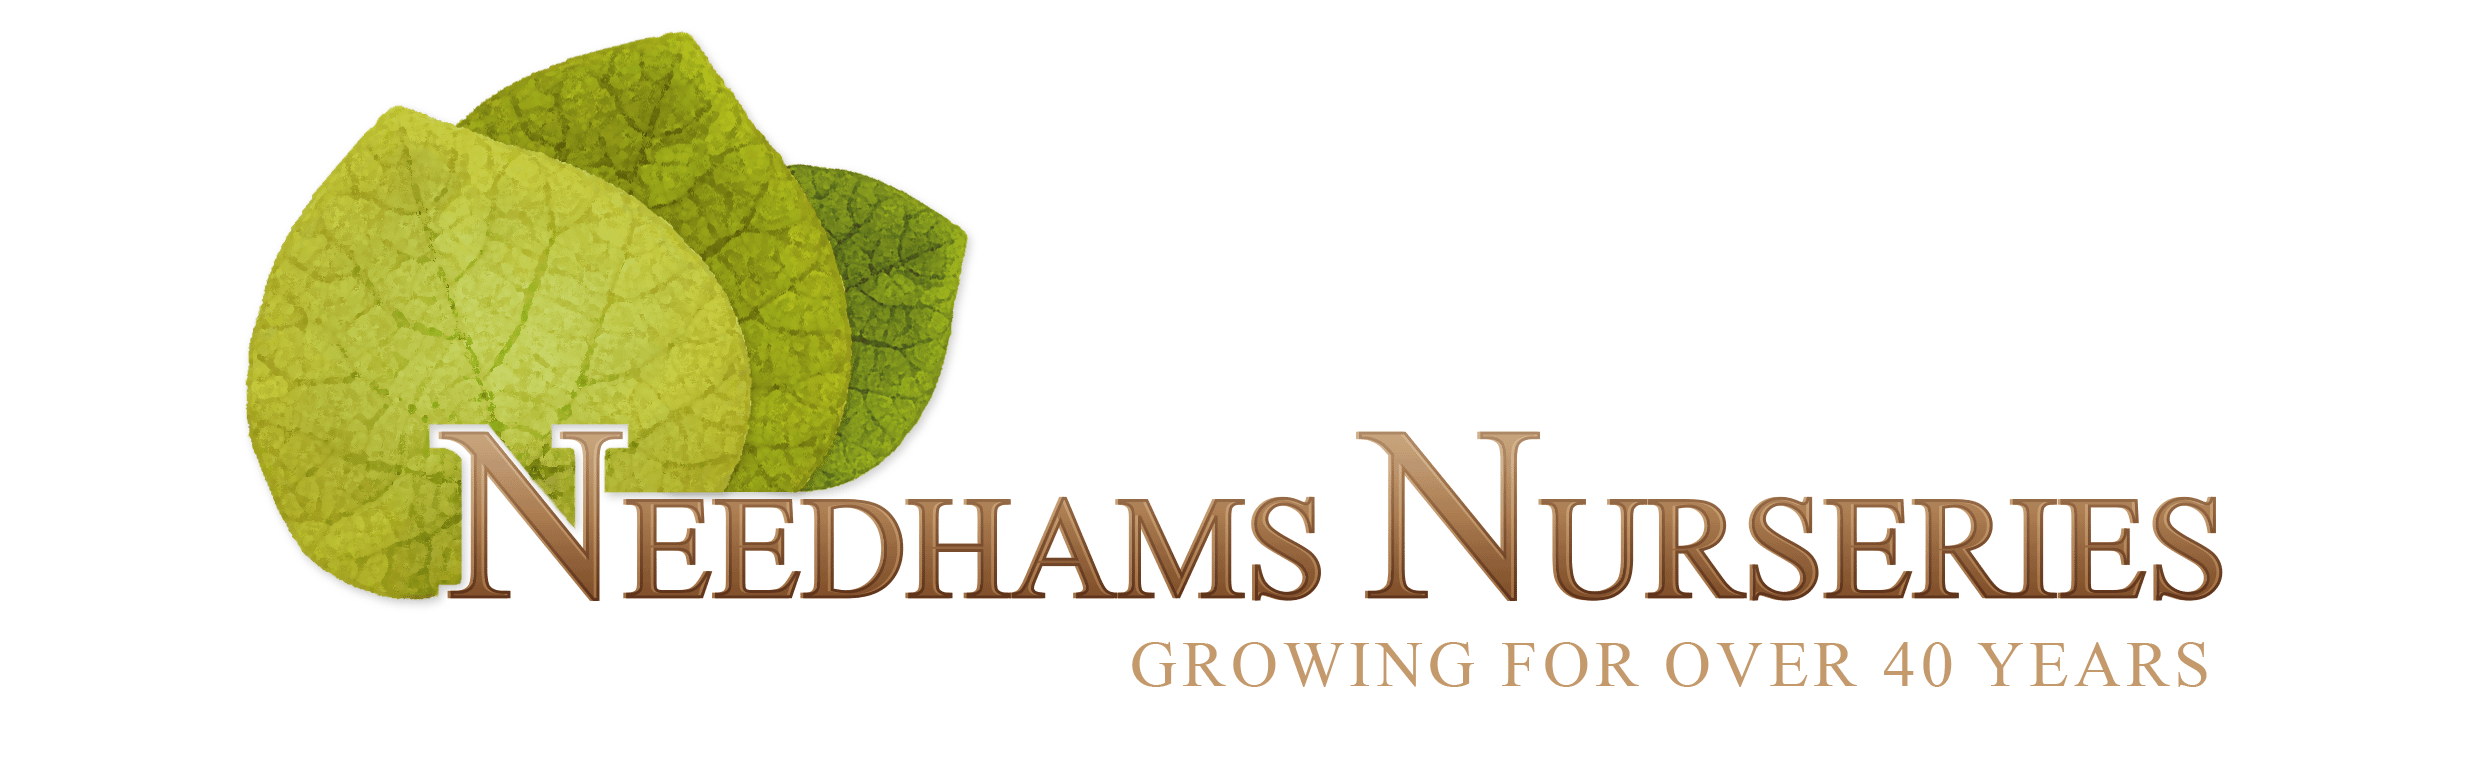 Needhams Nurseries - Commercial Growers